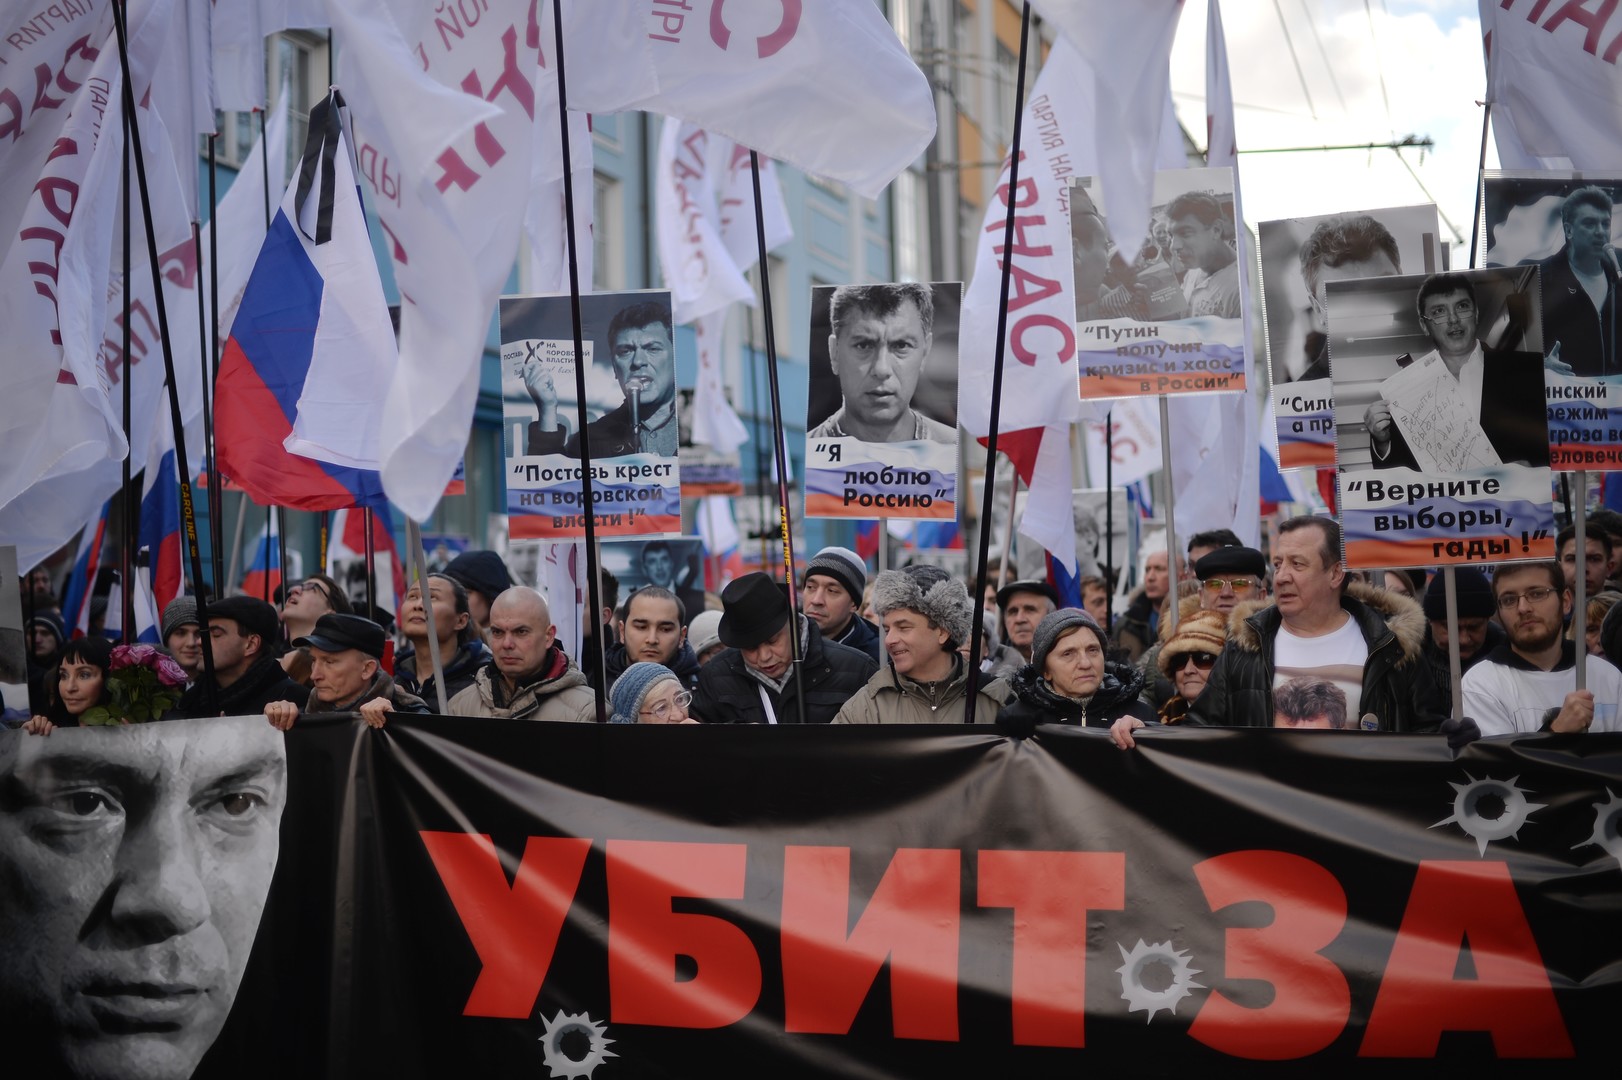 La disparition de l’opposant Boris Nemtsov commémorée à Moscou